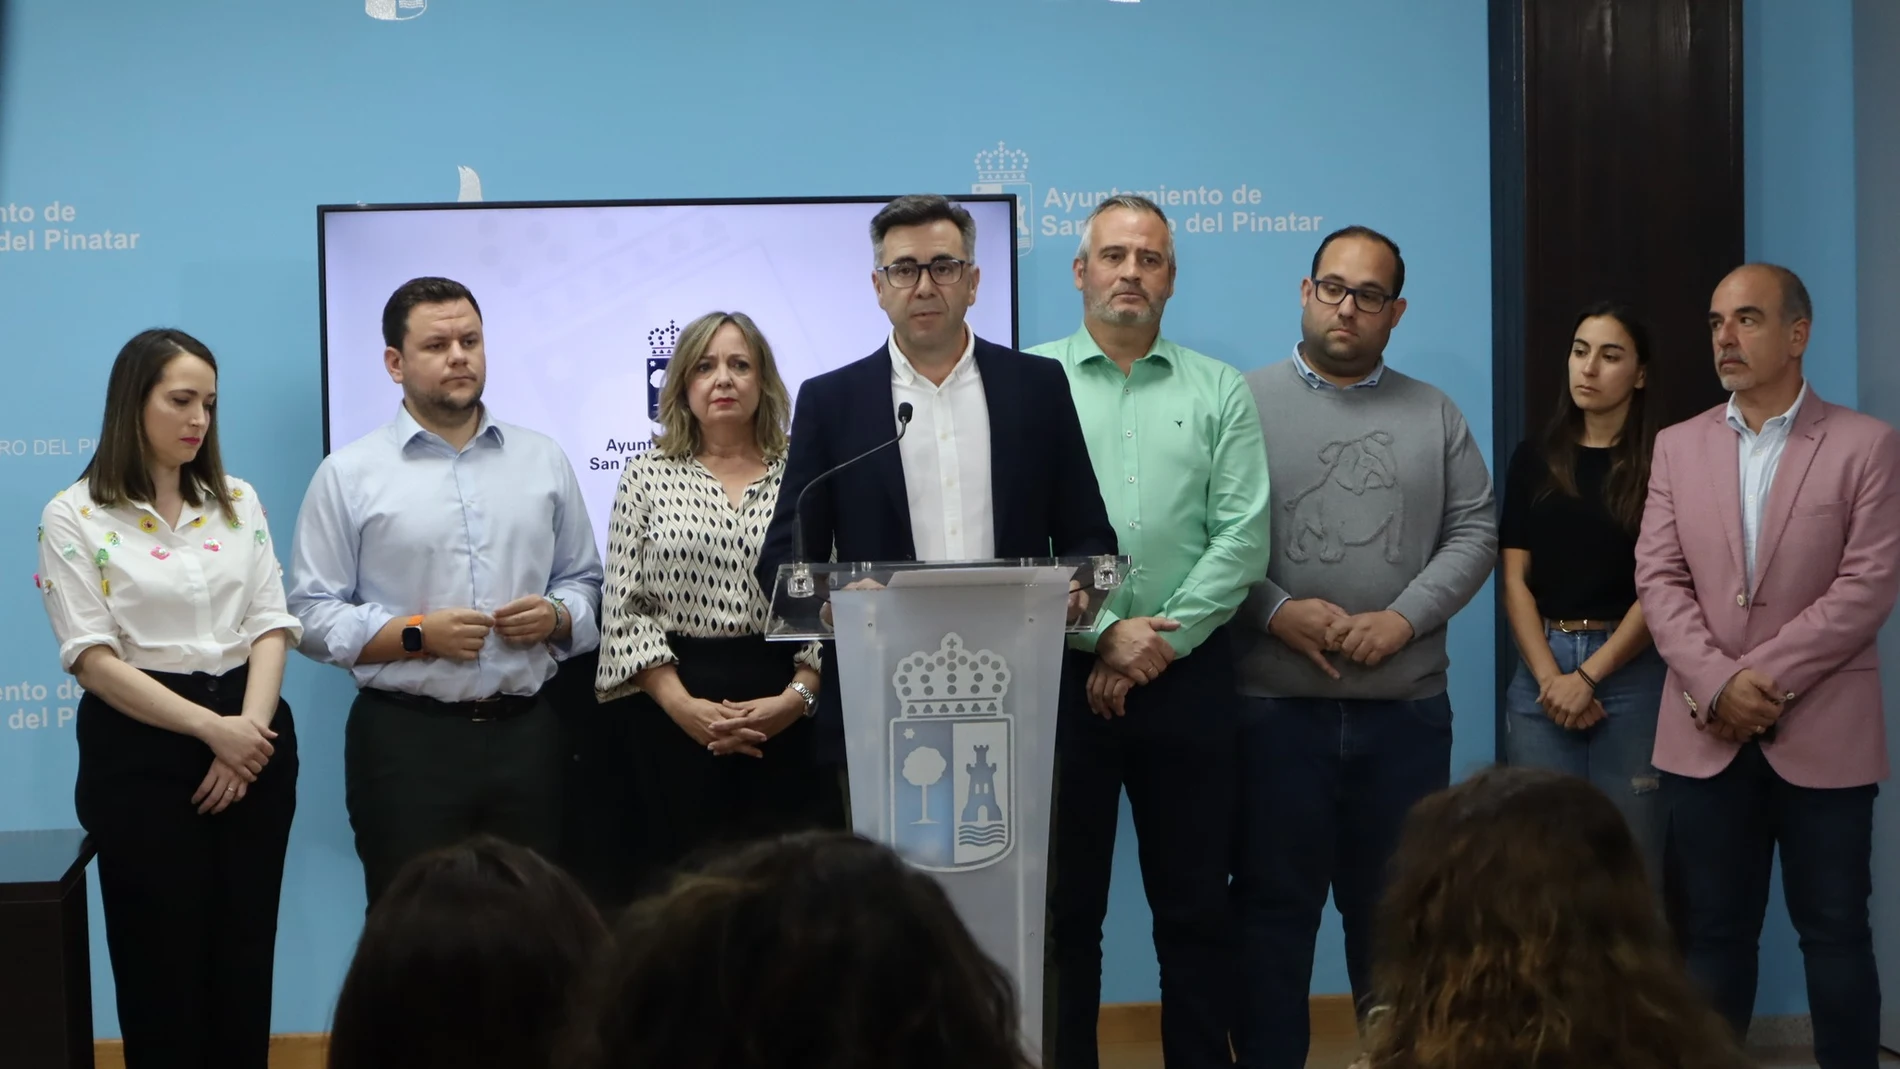 El alcalde en funciones del Ayuntamiento de San Pedro del Pinatar, Pedro Javier Sanchez Aznar ha ofrecido una rueda de prensa